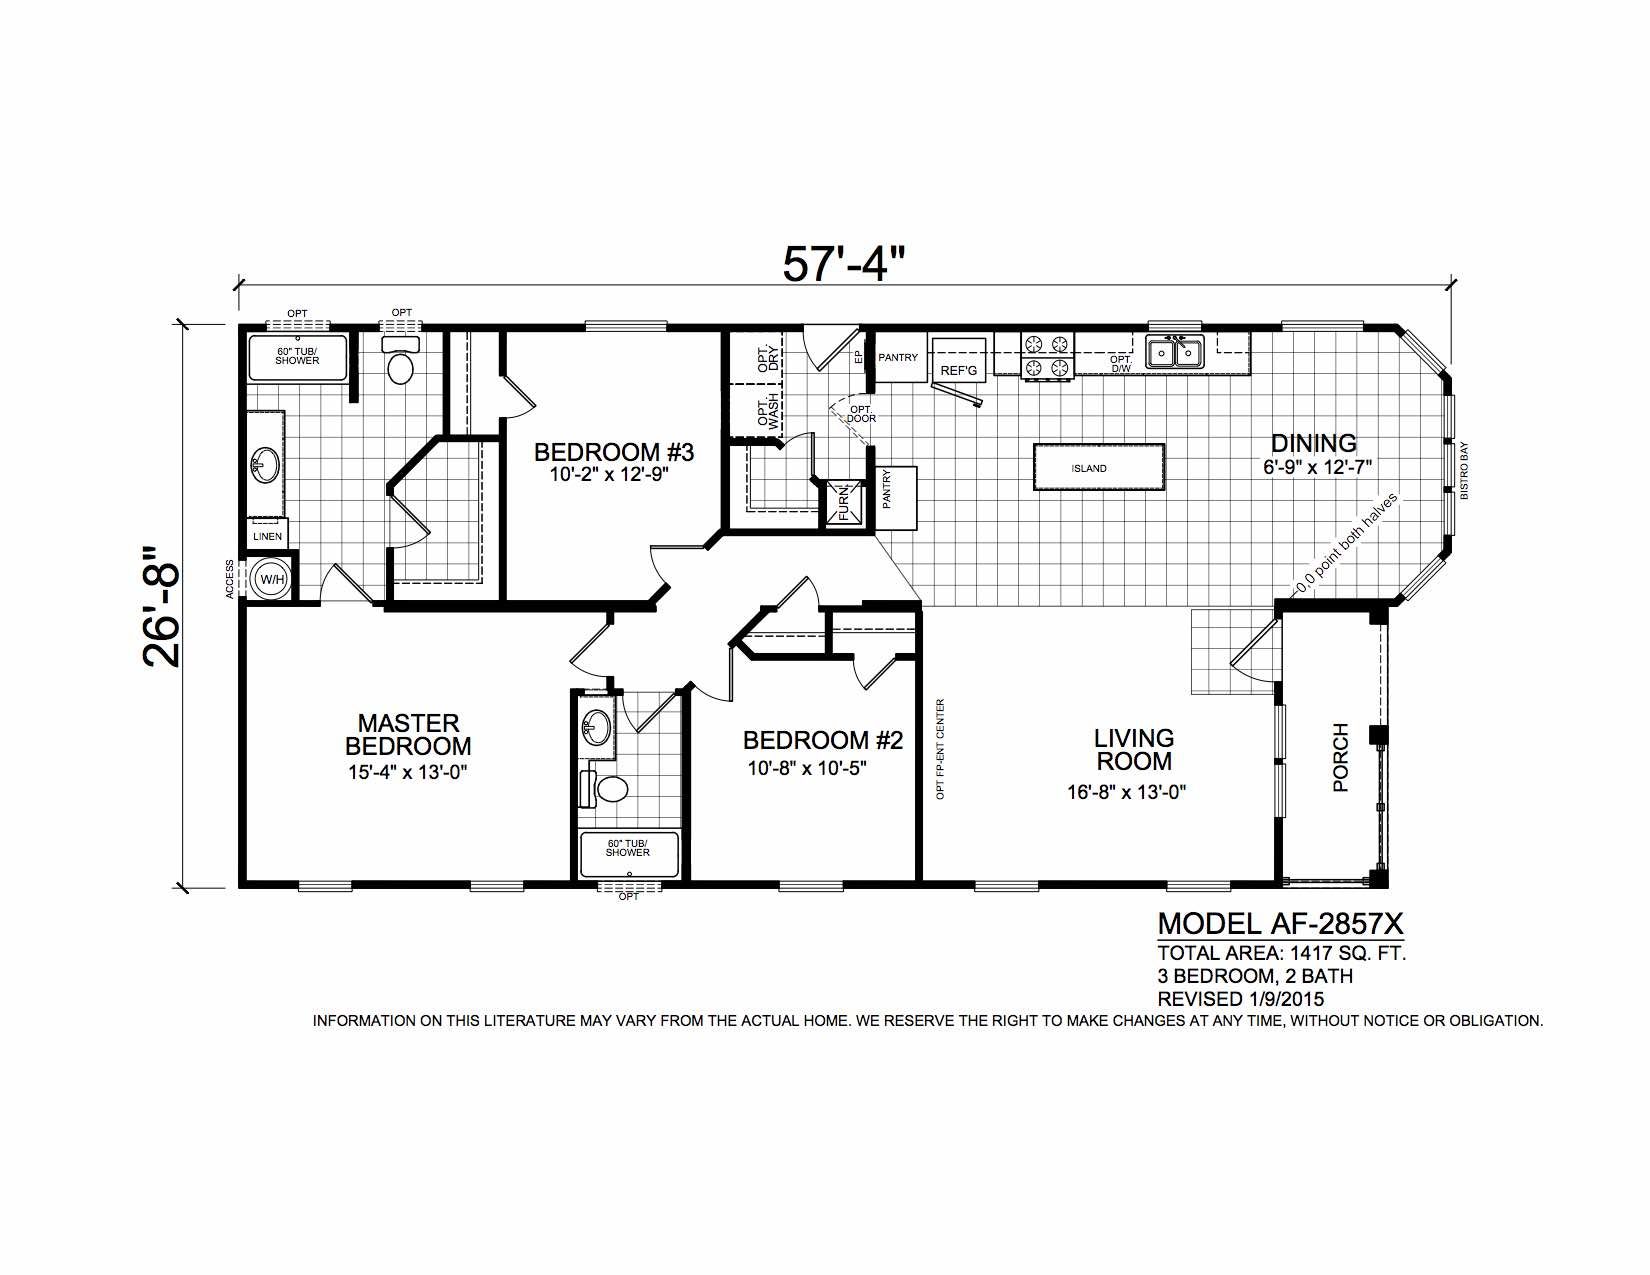 Homes Direct Modular Homes - Model AF2857X - Floorplan